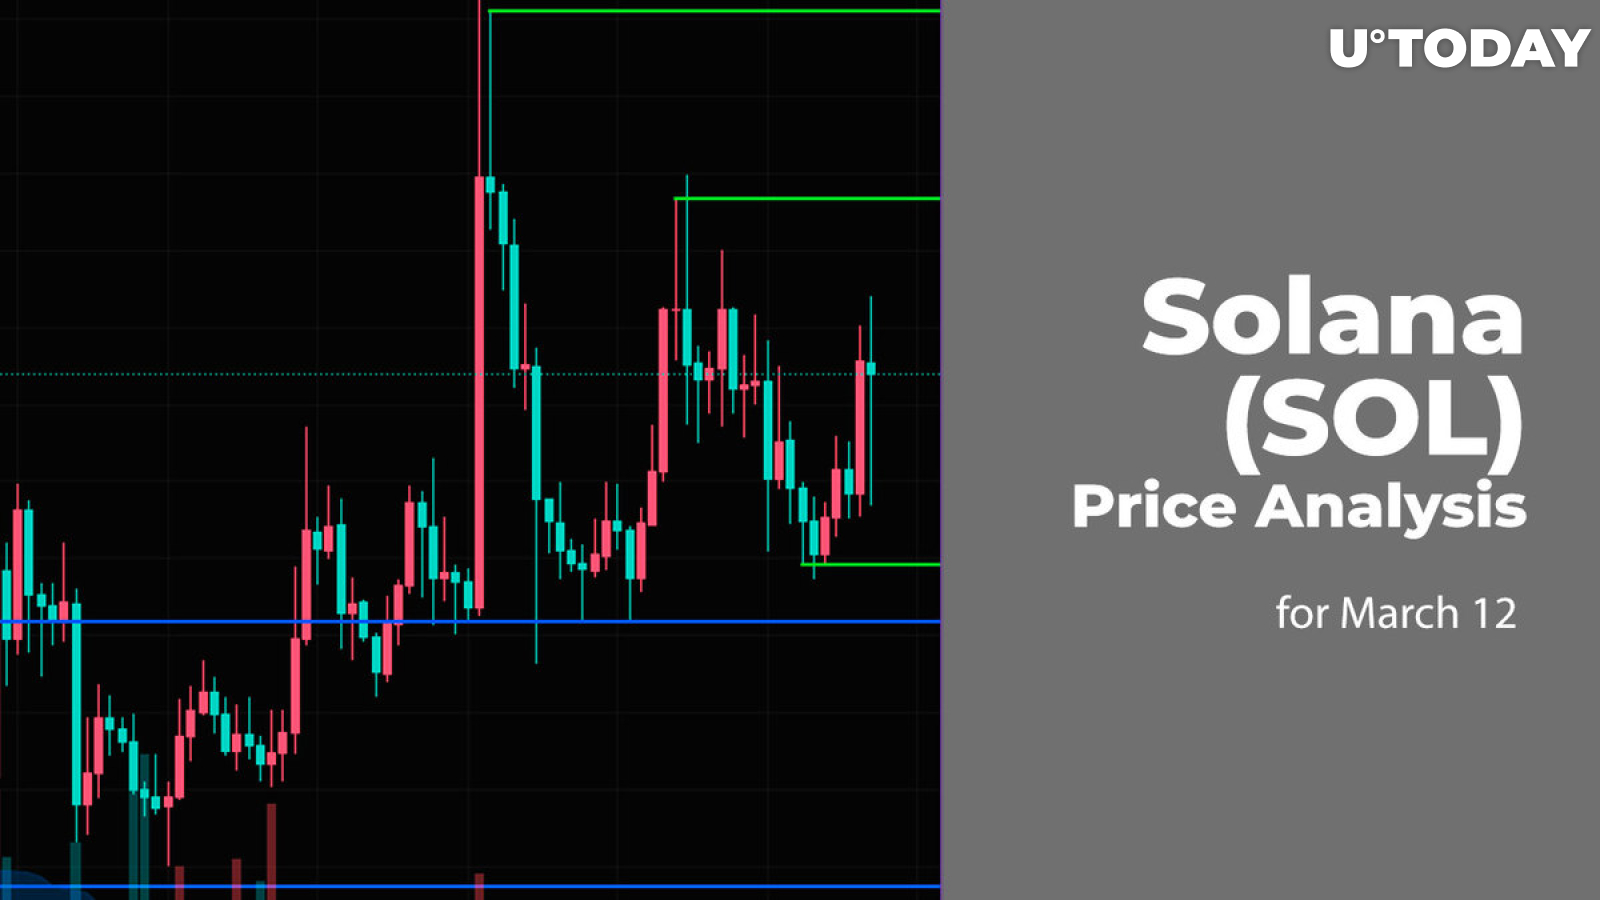 Solana (SOL) Price Prediction for March 12